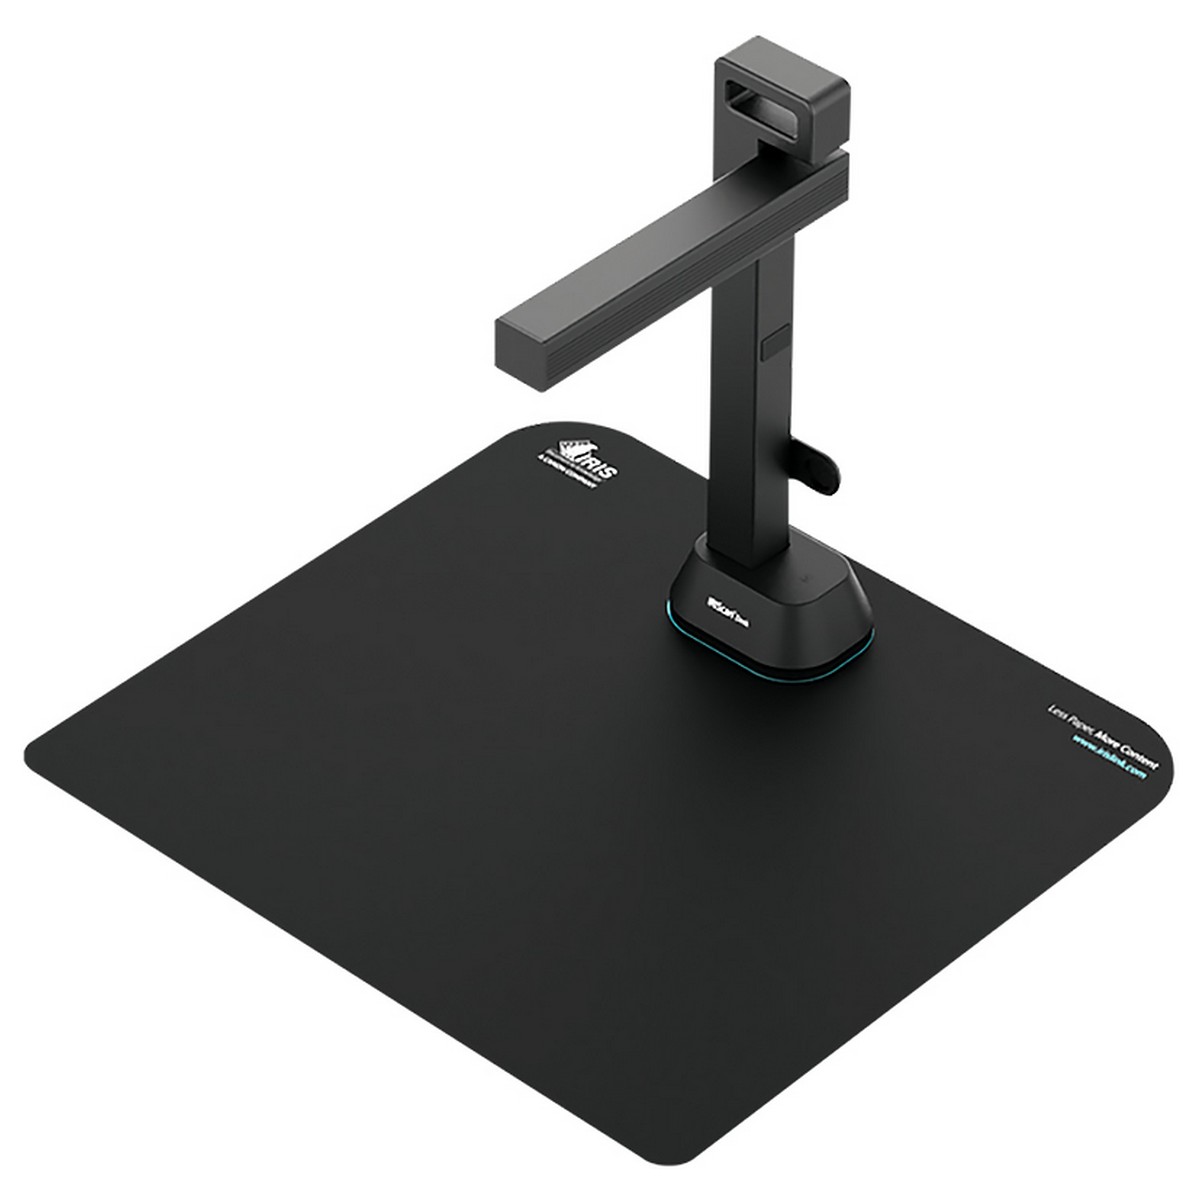 Сканер A3 Canon Desk 6 Pro (21MP, 60 стр./мин, MP3, WAV, MIC, USB, книжный, черный)